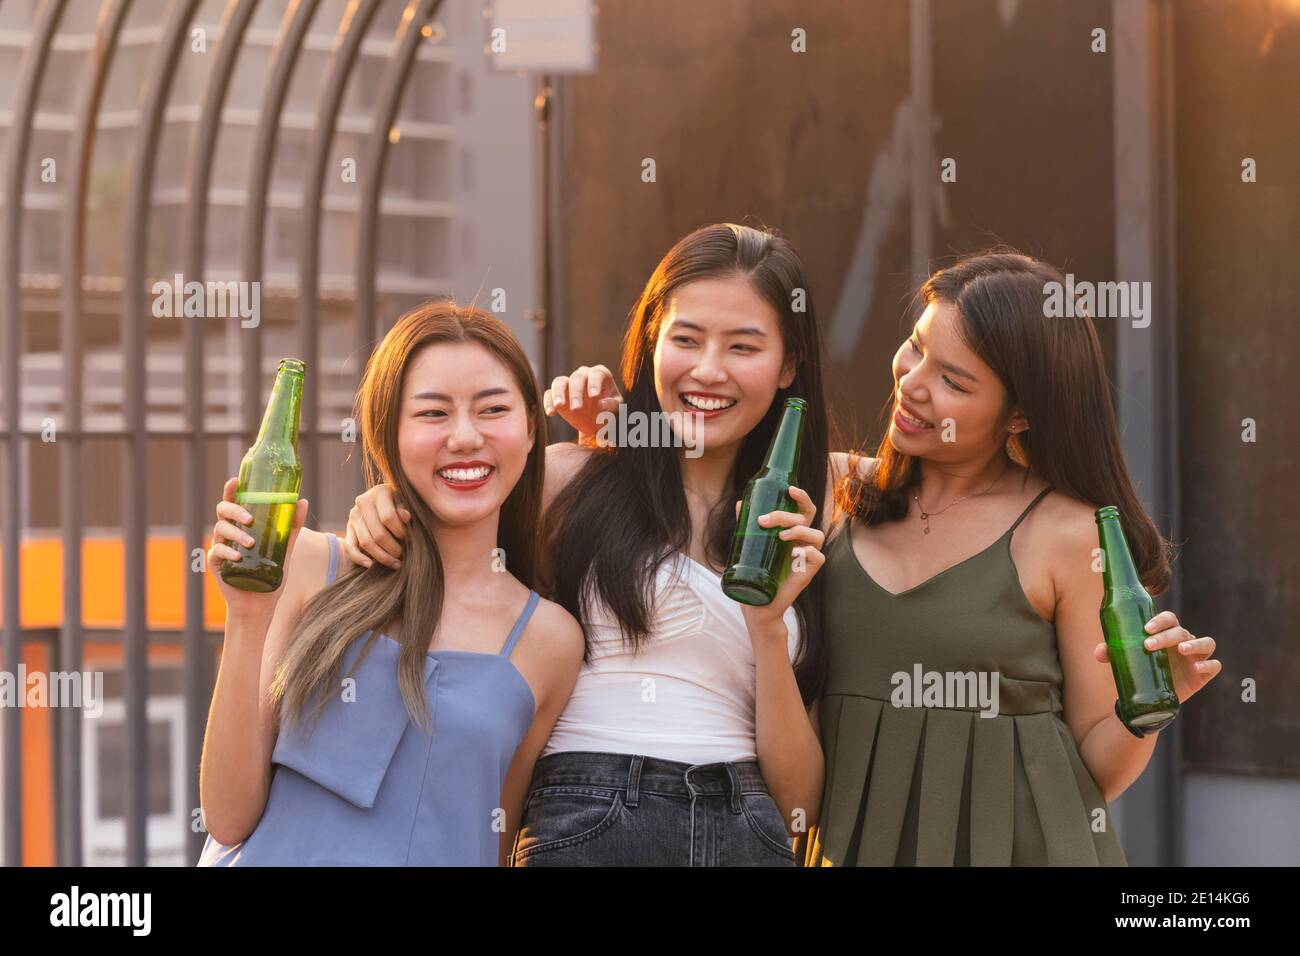 asiatische Frau Jugendliche jubeln und Toast mit Bierflasche zu feiern beim Abendessen Party im Sommer. Feier, Beziehung und Freundschaft conce Stockfoto